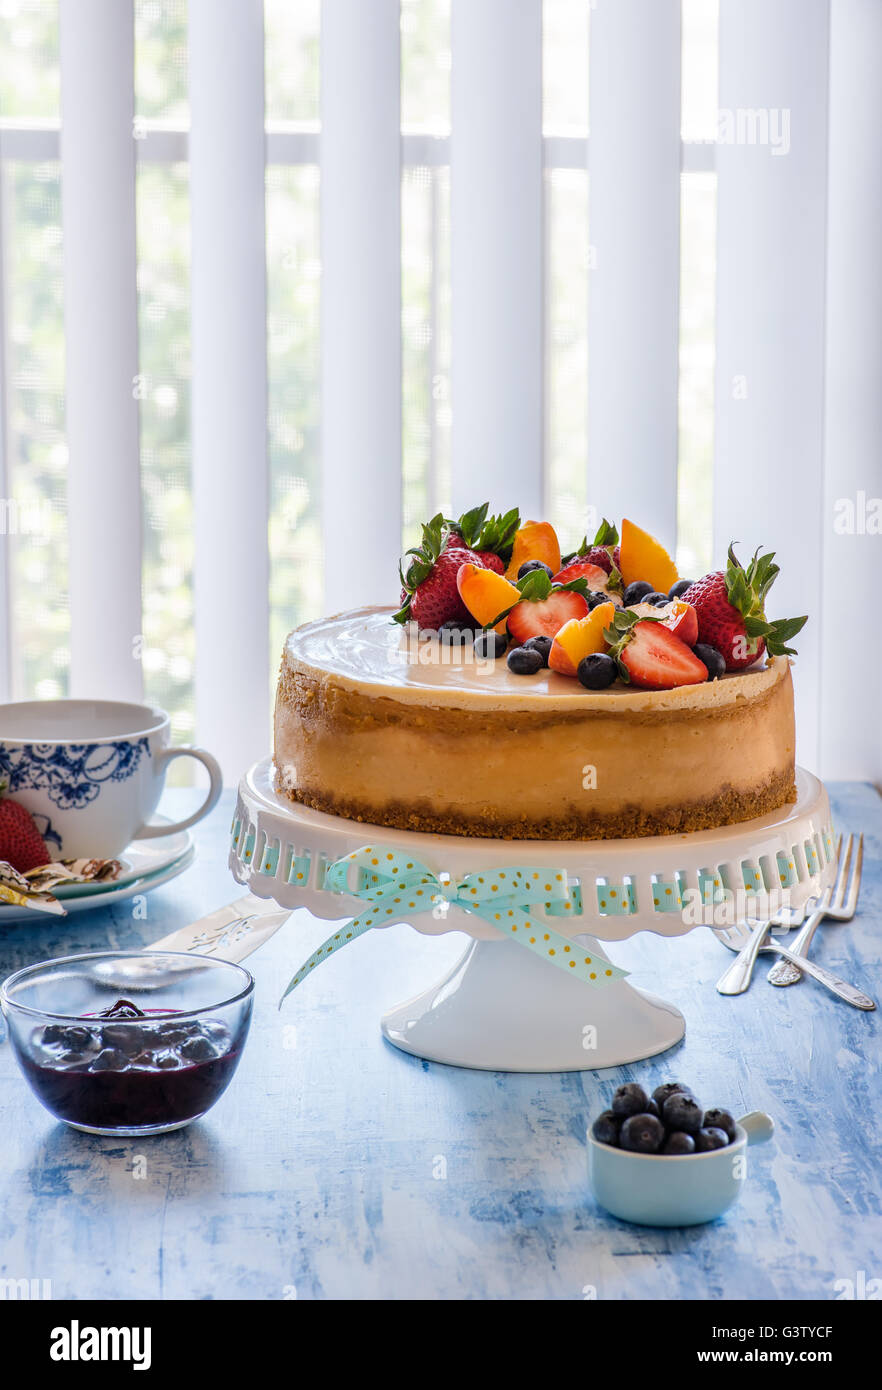 Cheesecake au caramel avec le lait caillé de citron sur cakestand avec sauce aux bleuets, décorées avec des baies fraîches. Selective focus, vertical Banque D'Images